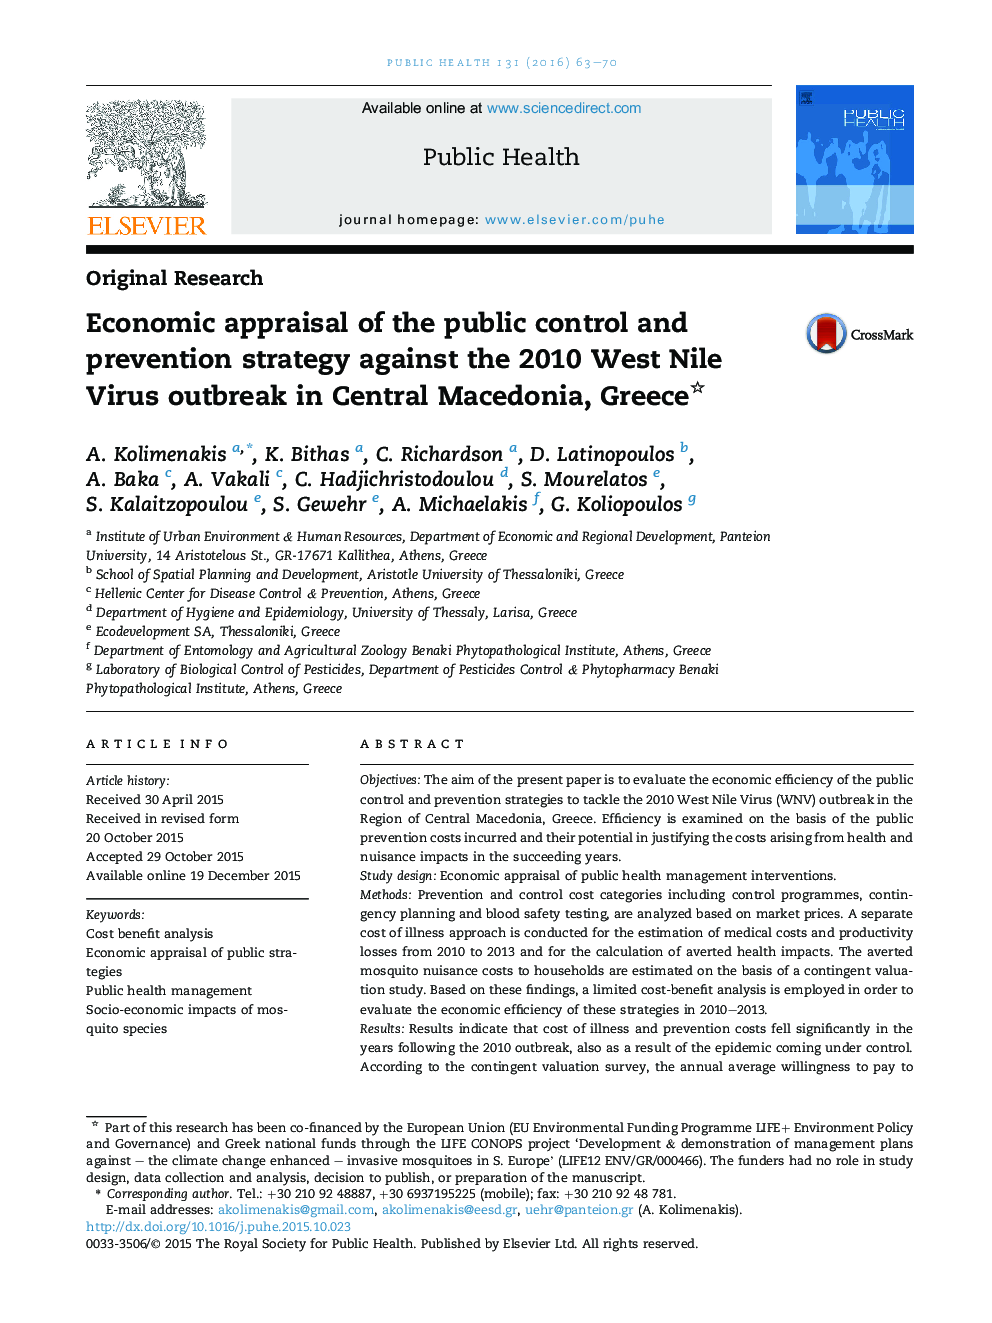 ارزیابی اقتصادی کنترل عمومی و پیشگیری از شیوع بیماری ویروس غرب نیل 2010 در مقدونیه مرکزی، یونان 